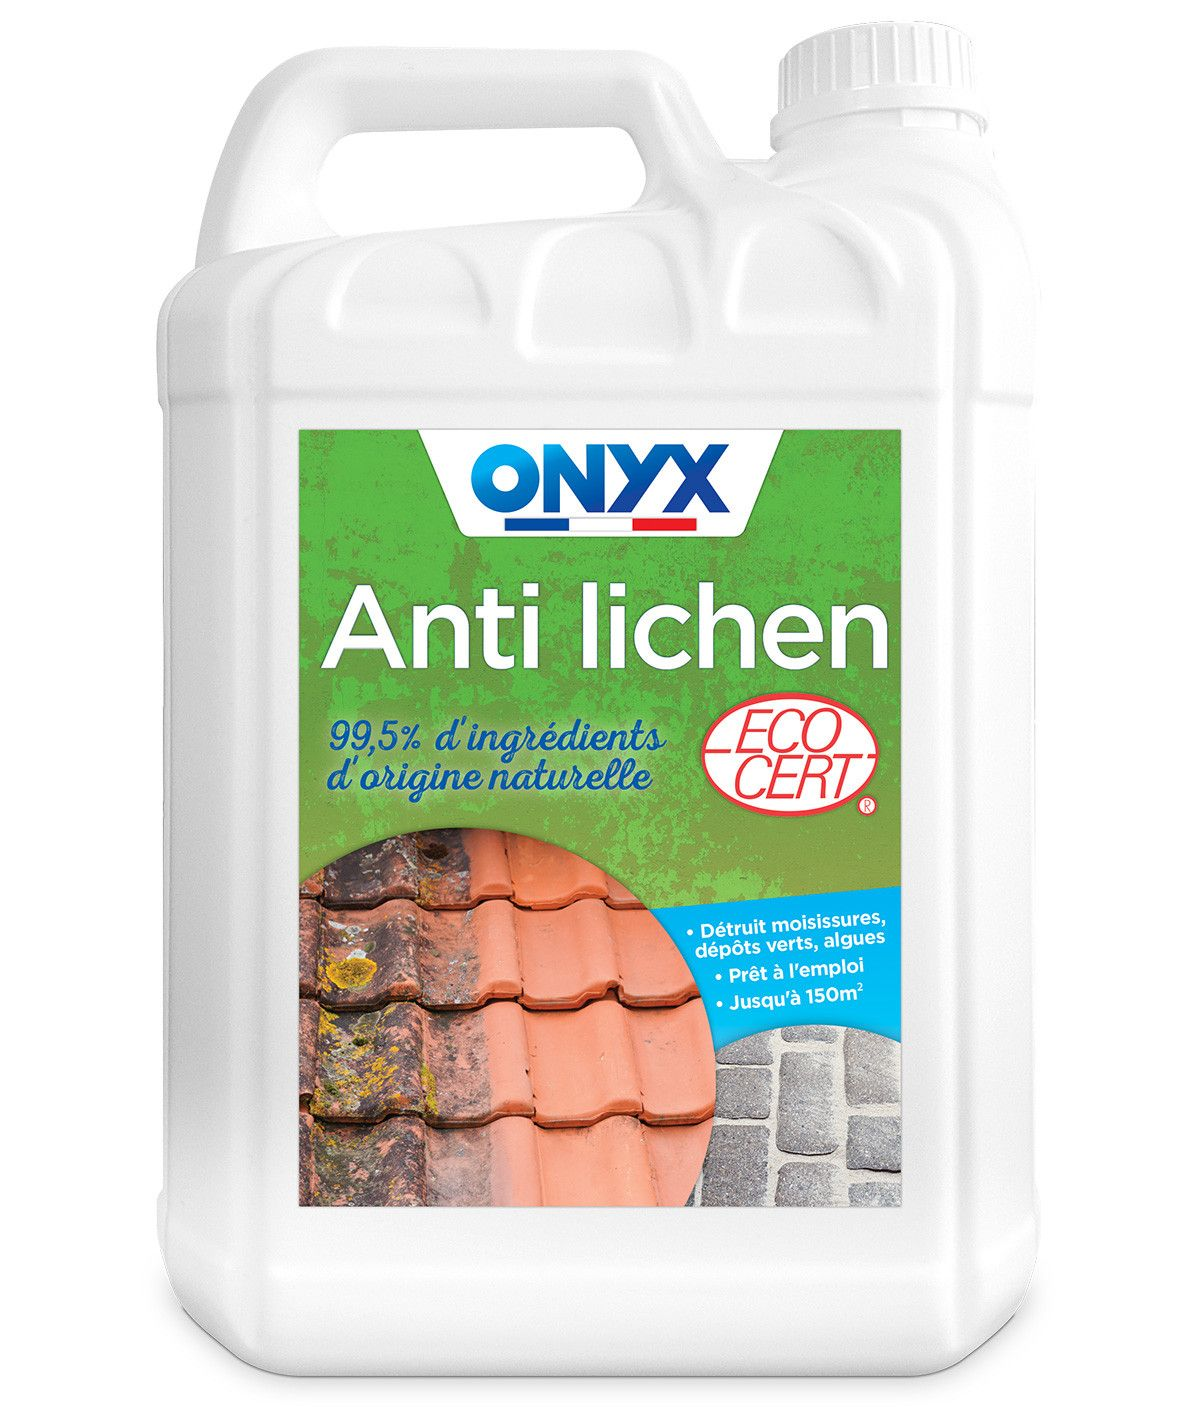 Anti Lichen, destroys mold, lichen and algae, 5 L canister